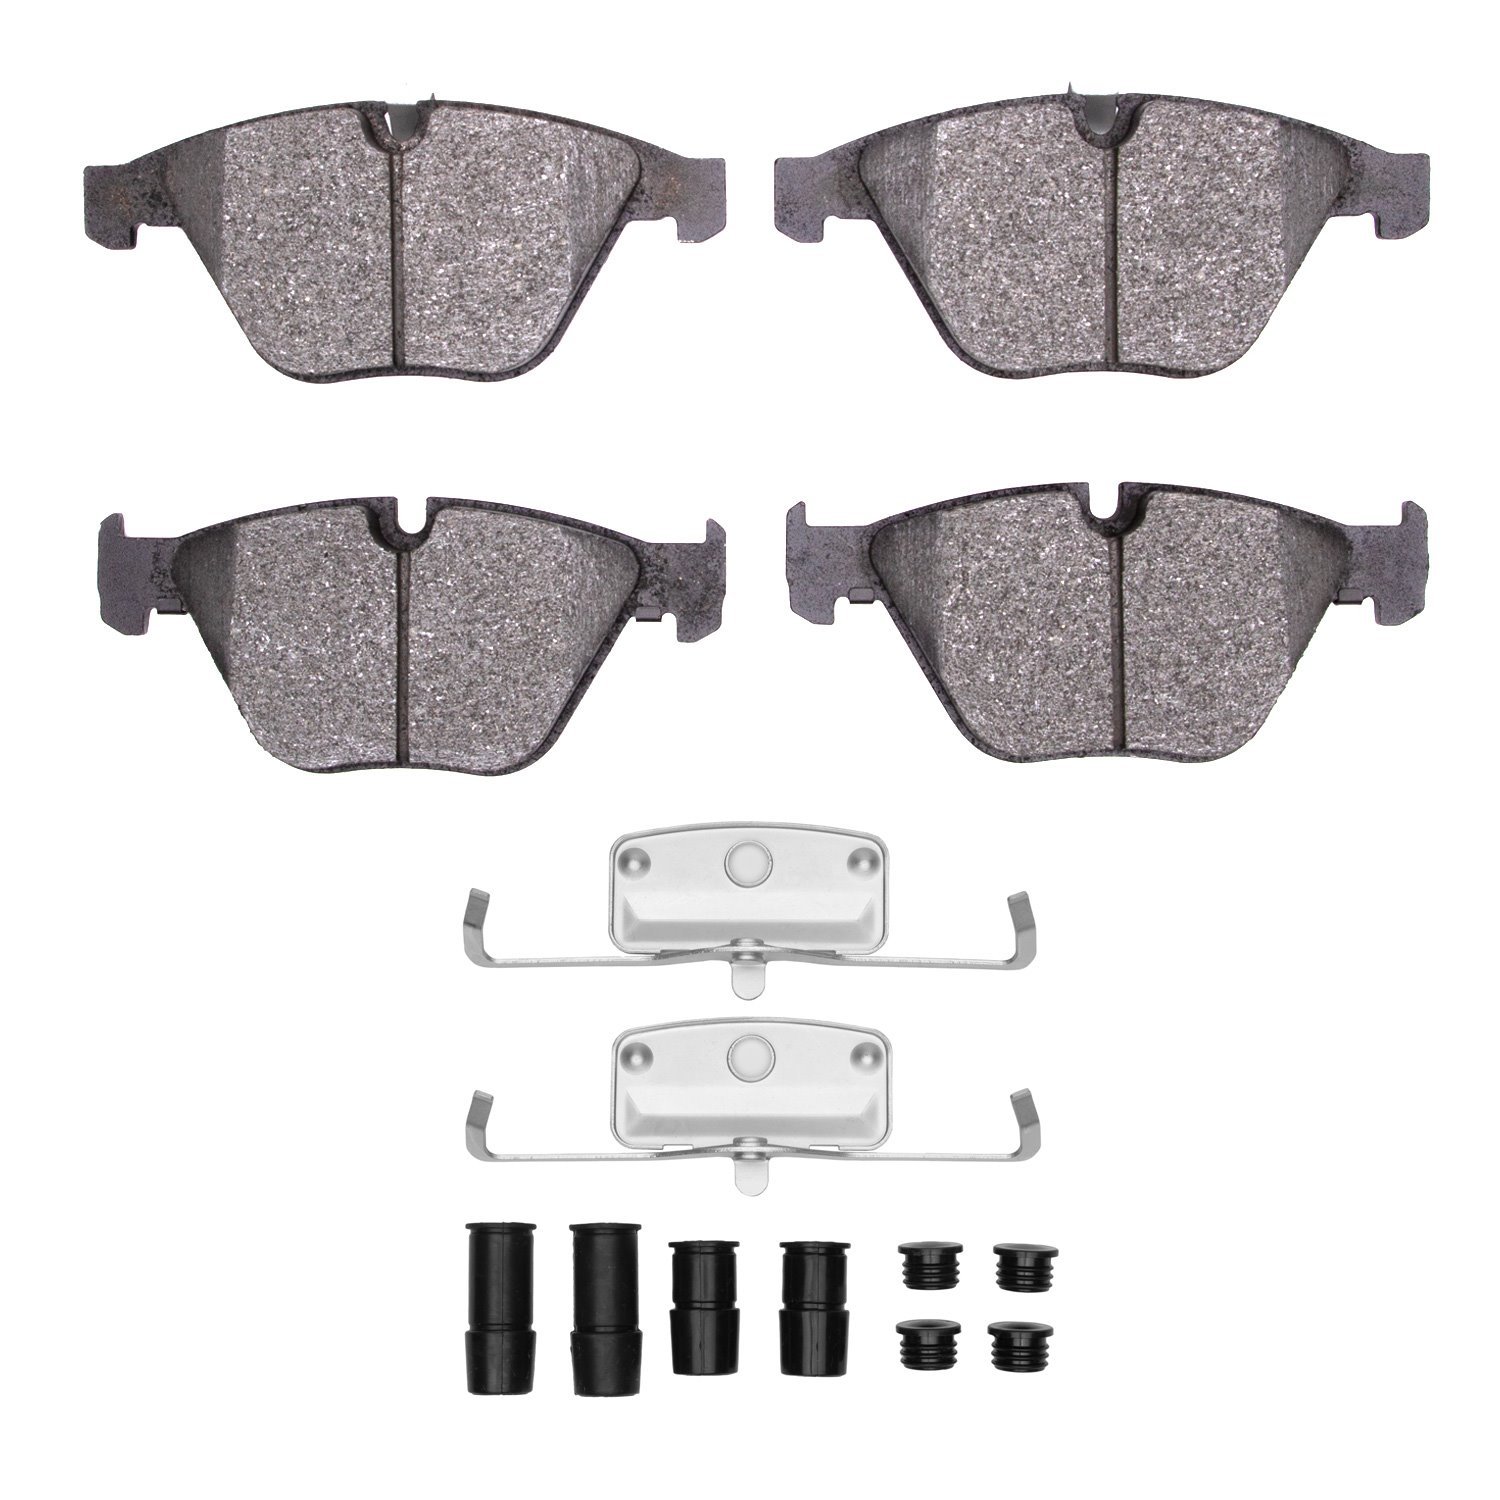 Semi-Metallic Brake Pads & Hardware Kit, 2007-2016 BMW, Position: Front